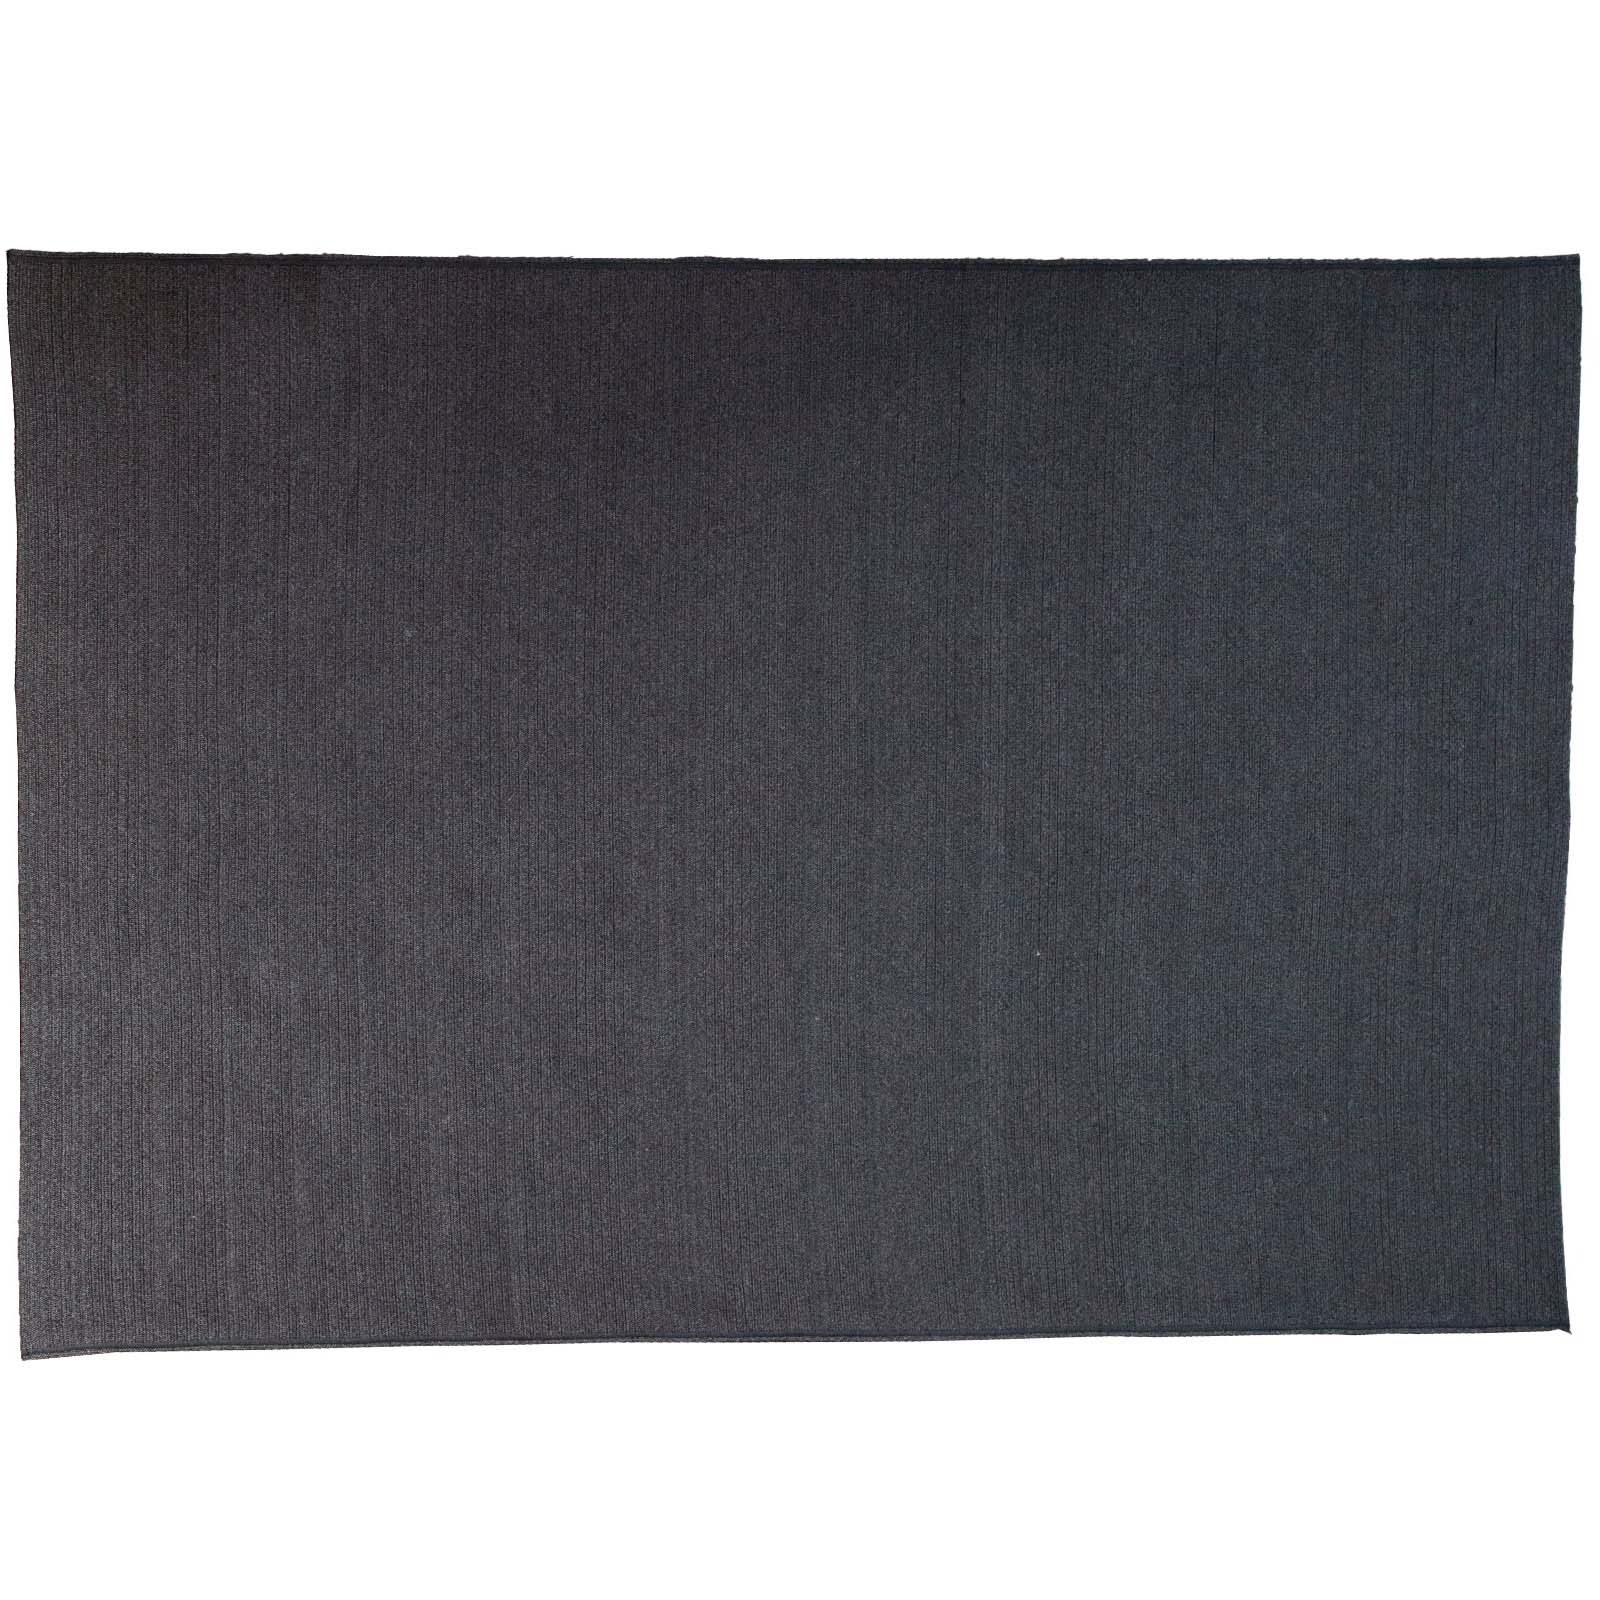 Circle Teppich 300x200 cm aus Cane-line Soft Rope in Dark Grey